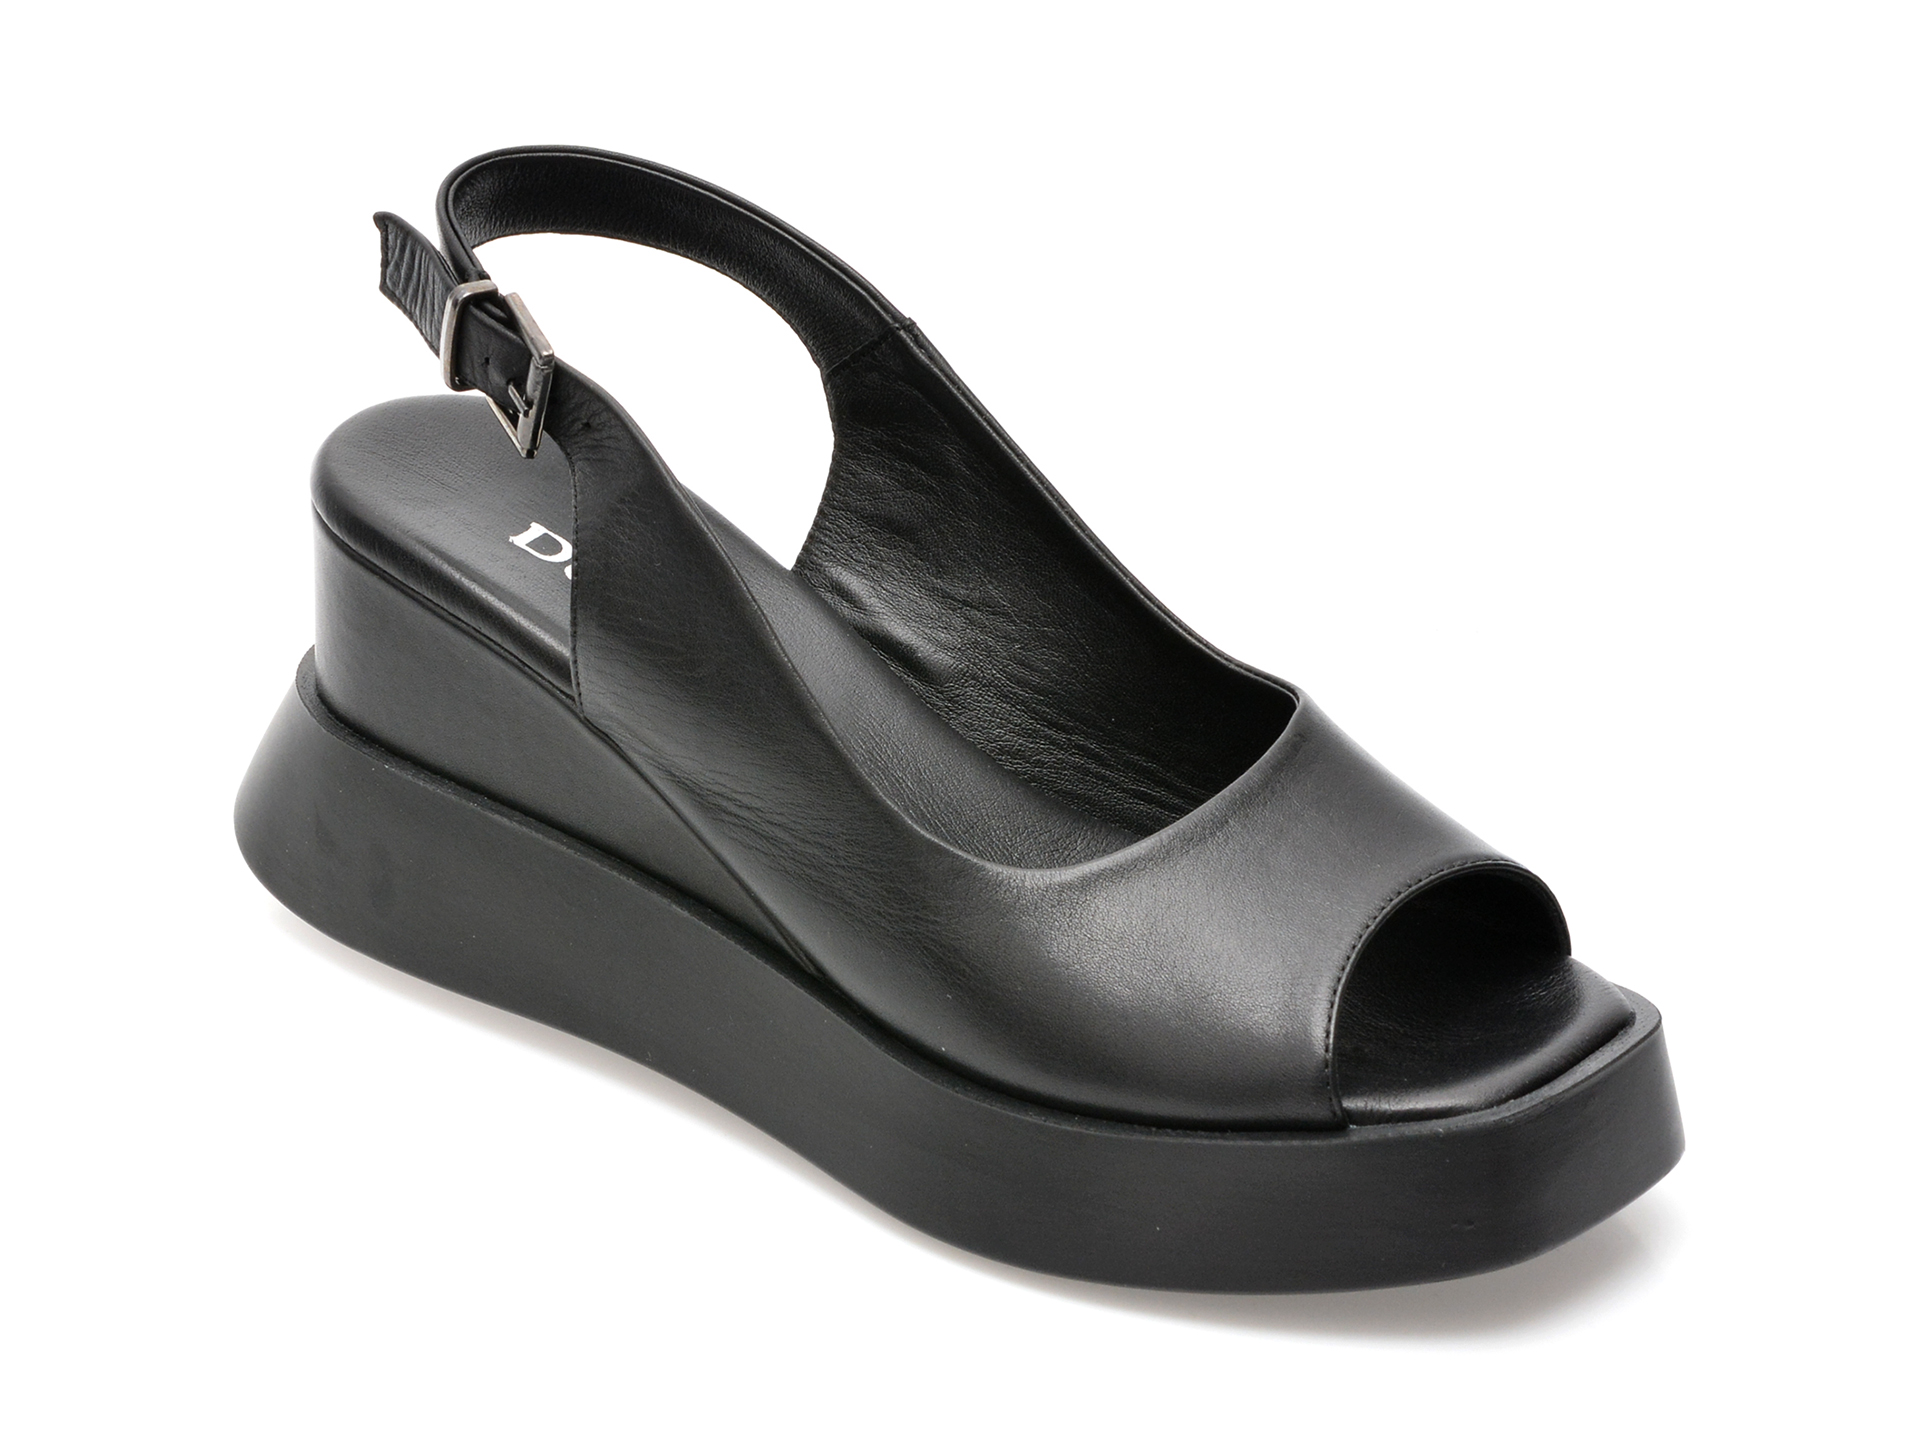 Sandale DEREM negre, 30033, din piele naturala